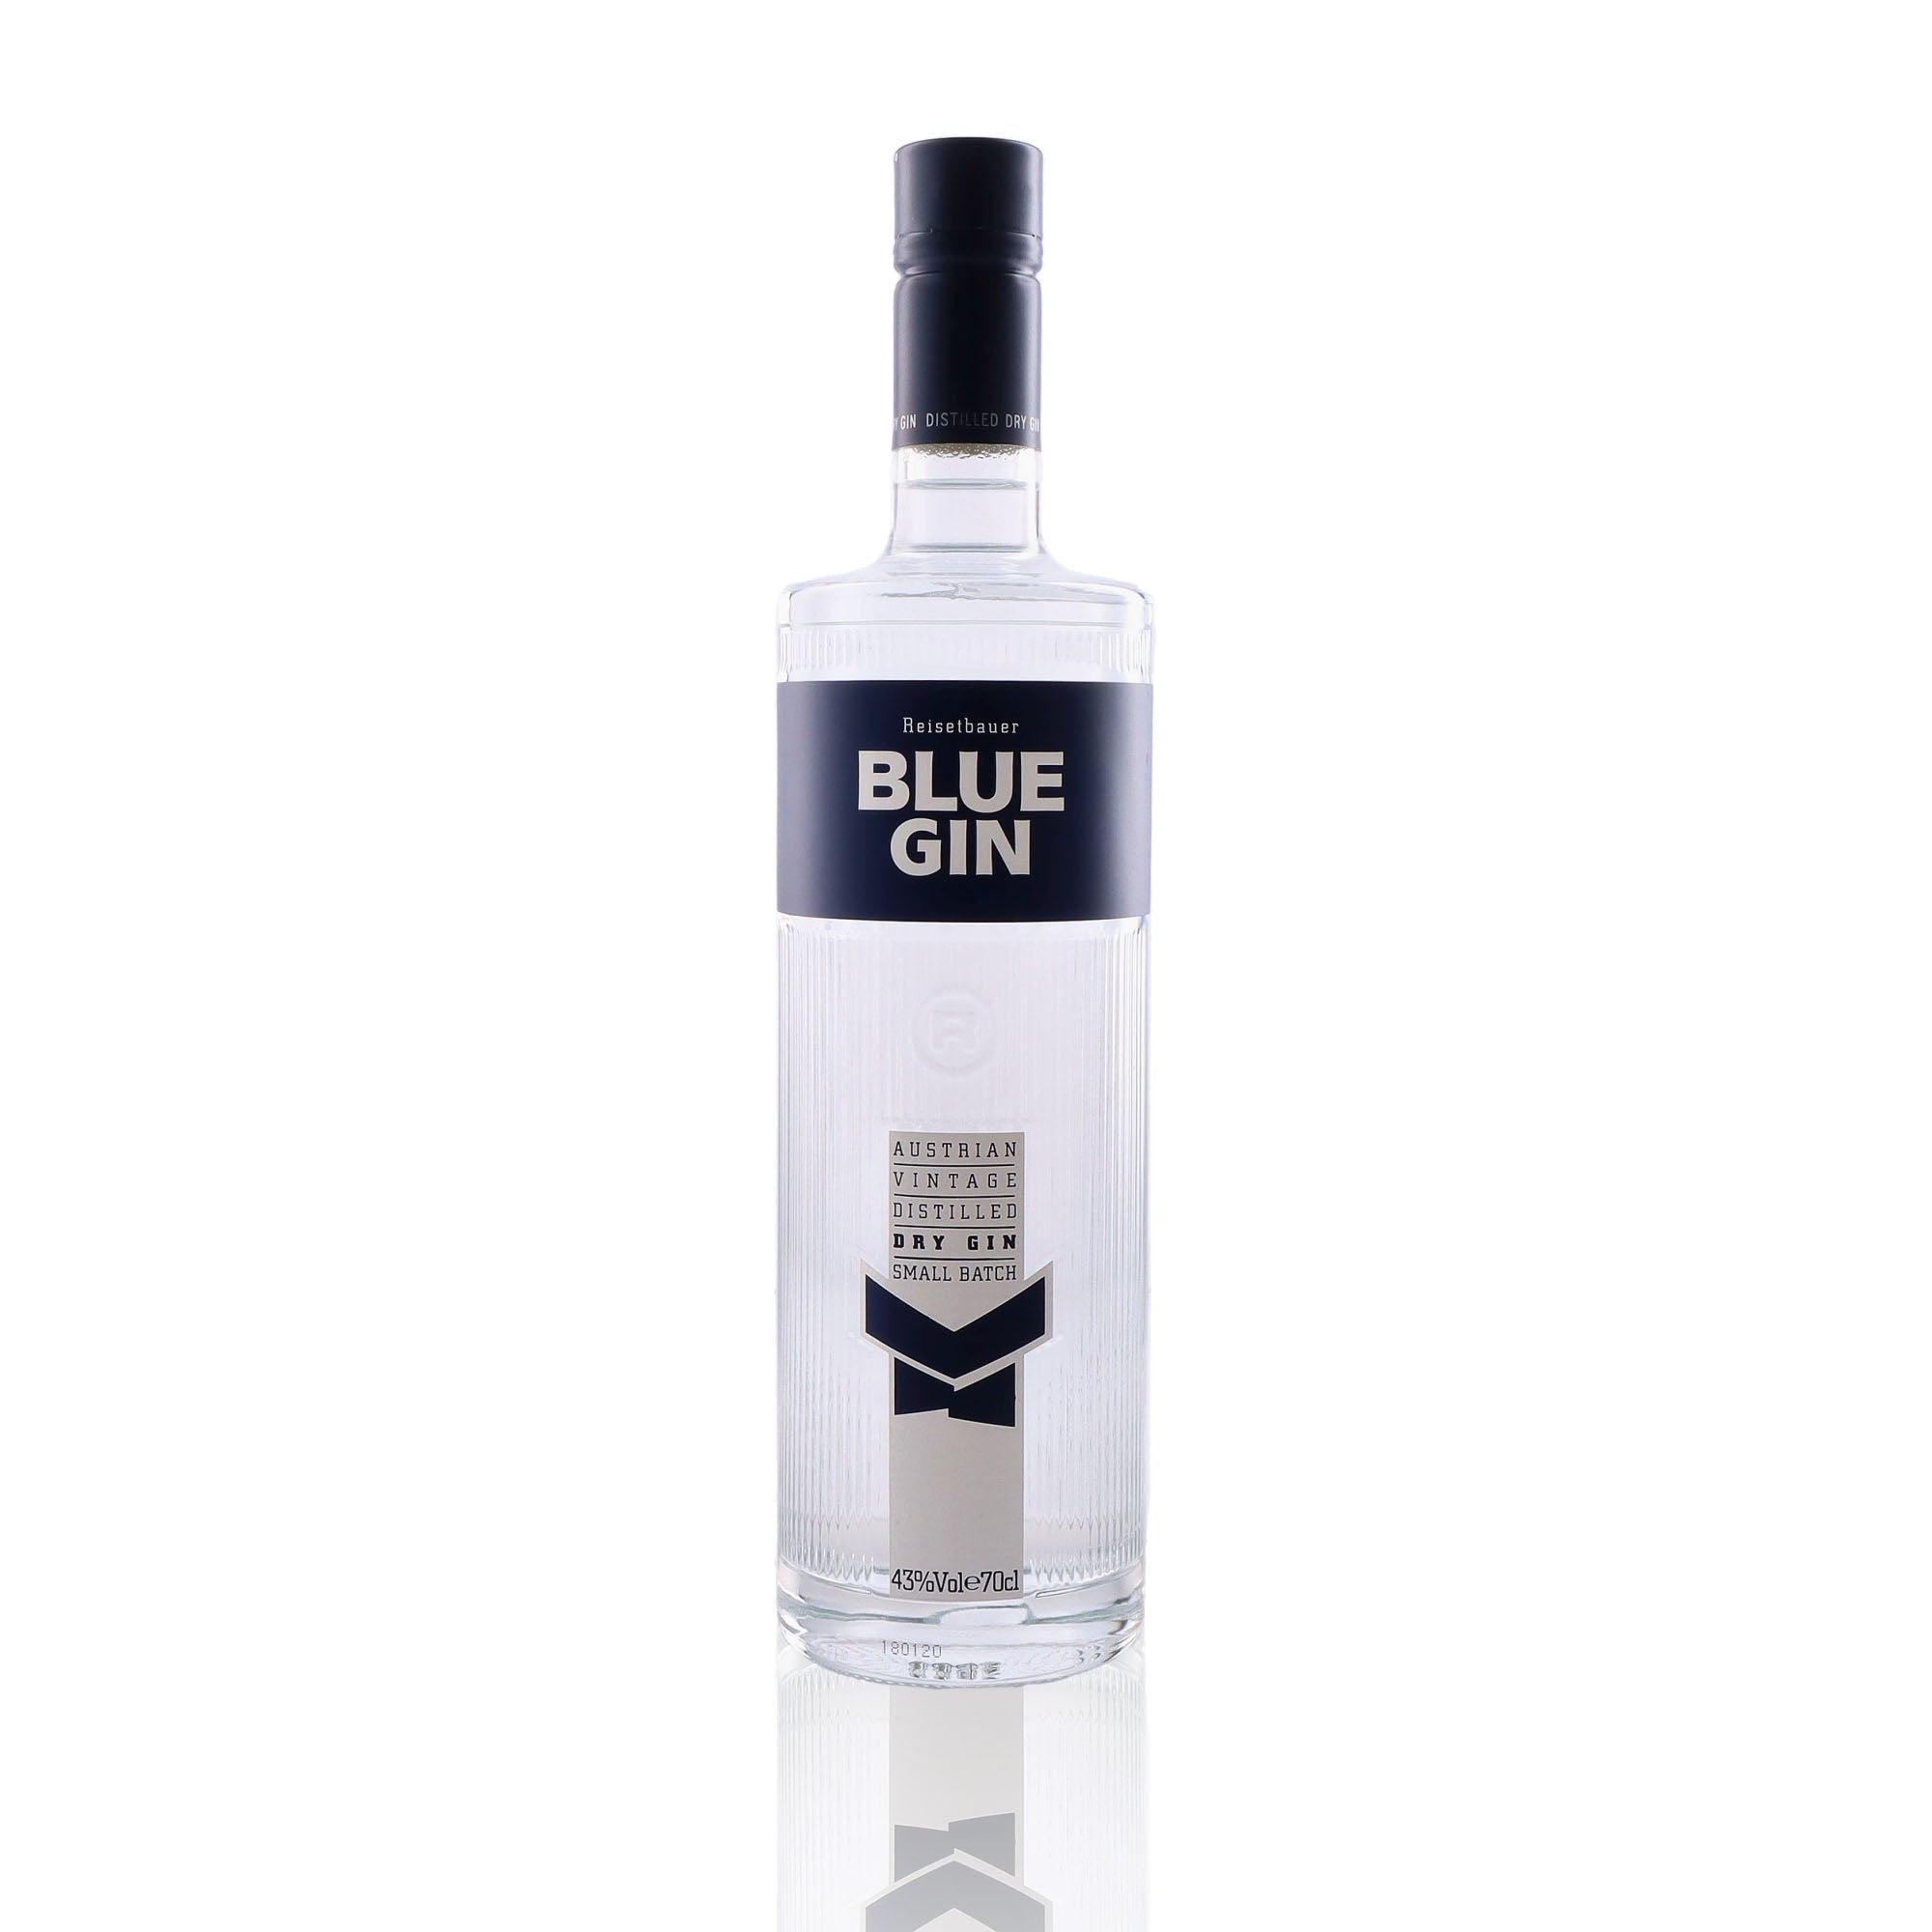 Une bouteille de Gin, de la marque Blue Gin, nommée Vintage.